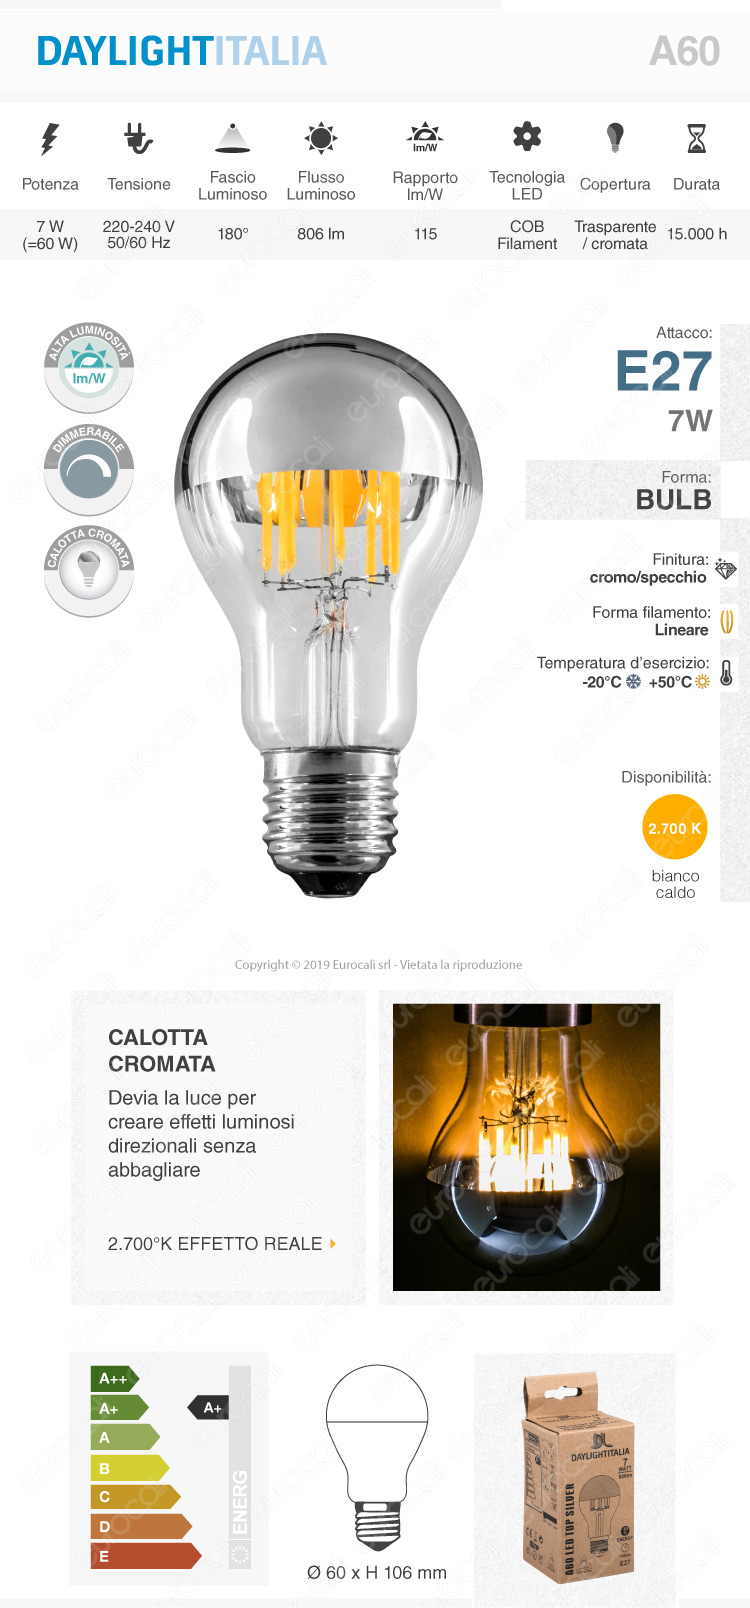 Daylight Lampadina E27 Filamenti LED 7W Bulb A60 con Calotta Cromata Dimmerabile